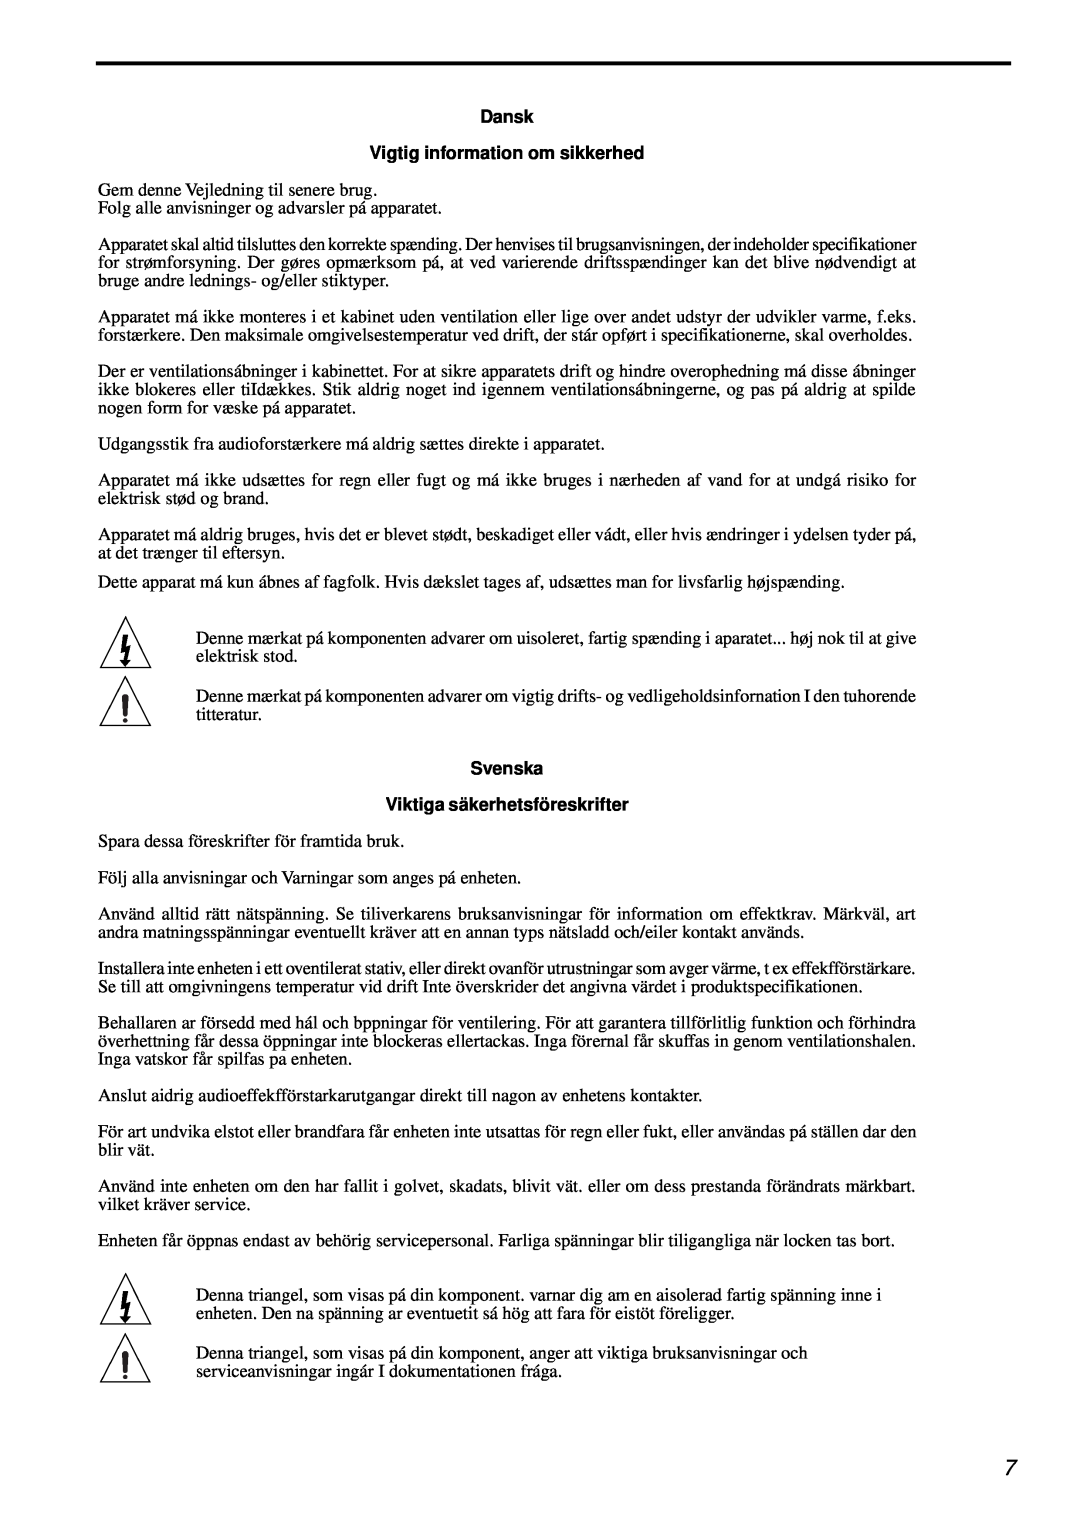 Parasound AVC-2500 owner manual Dansk Vigtig information om sikkerhed, Svenska Viktiga säkerhetsföreskrifter 